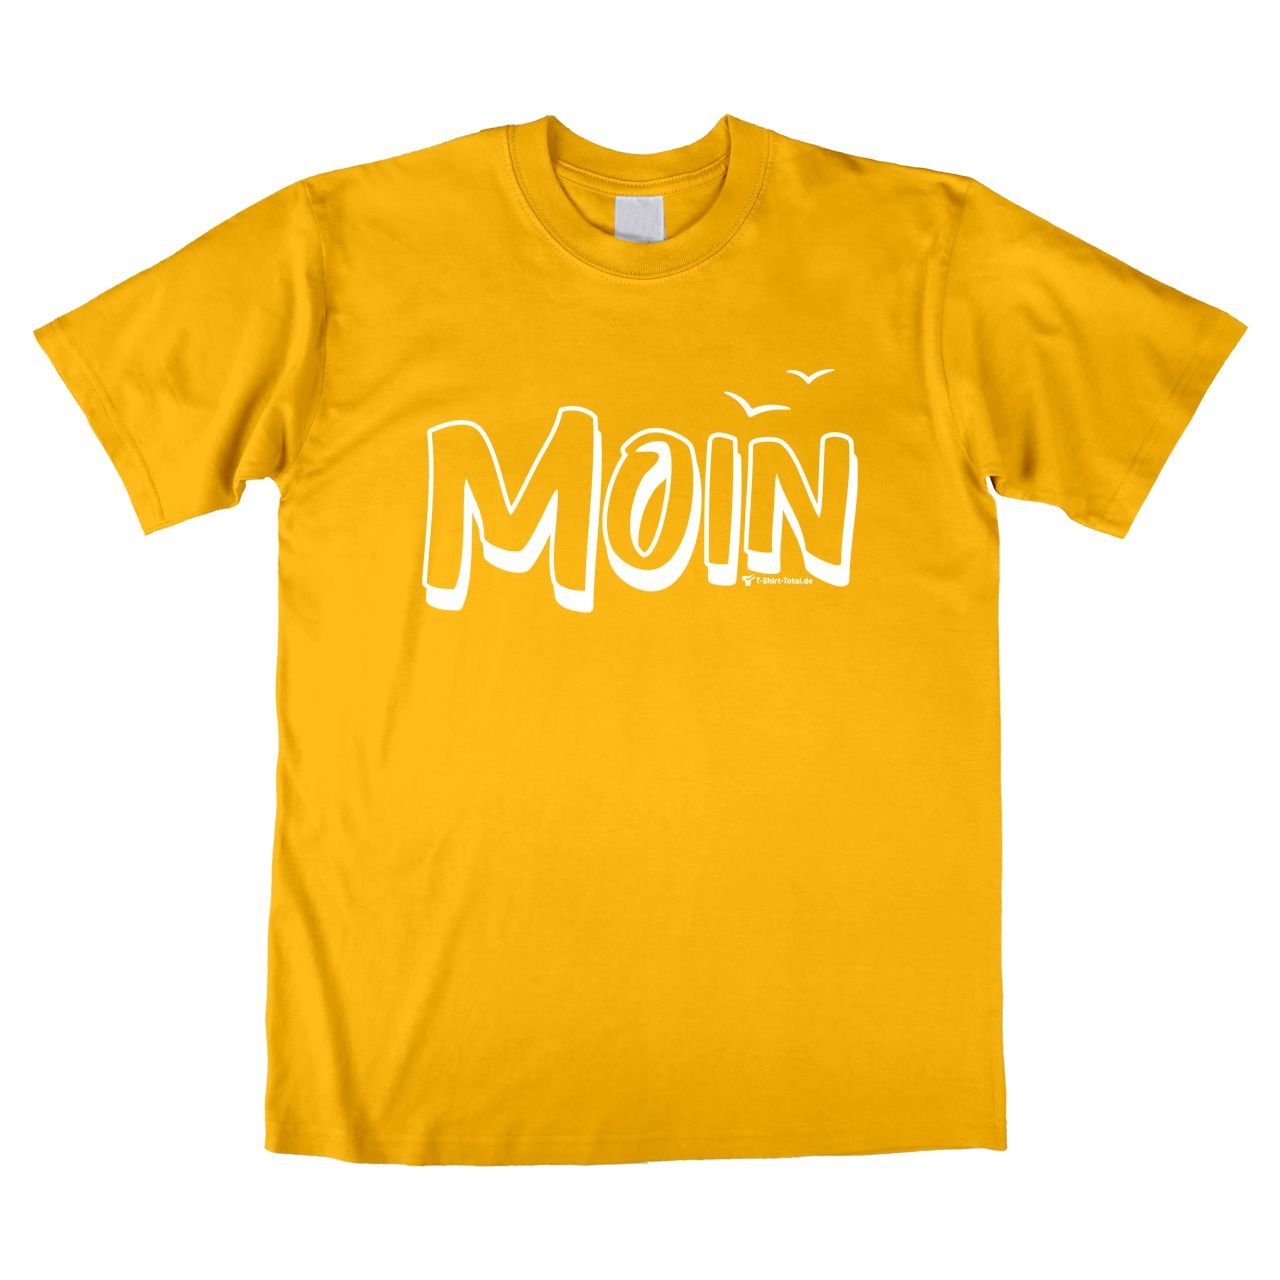 Moin mit Möwen Unisex T-Shirt gelb Large